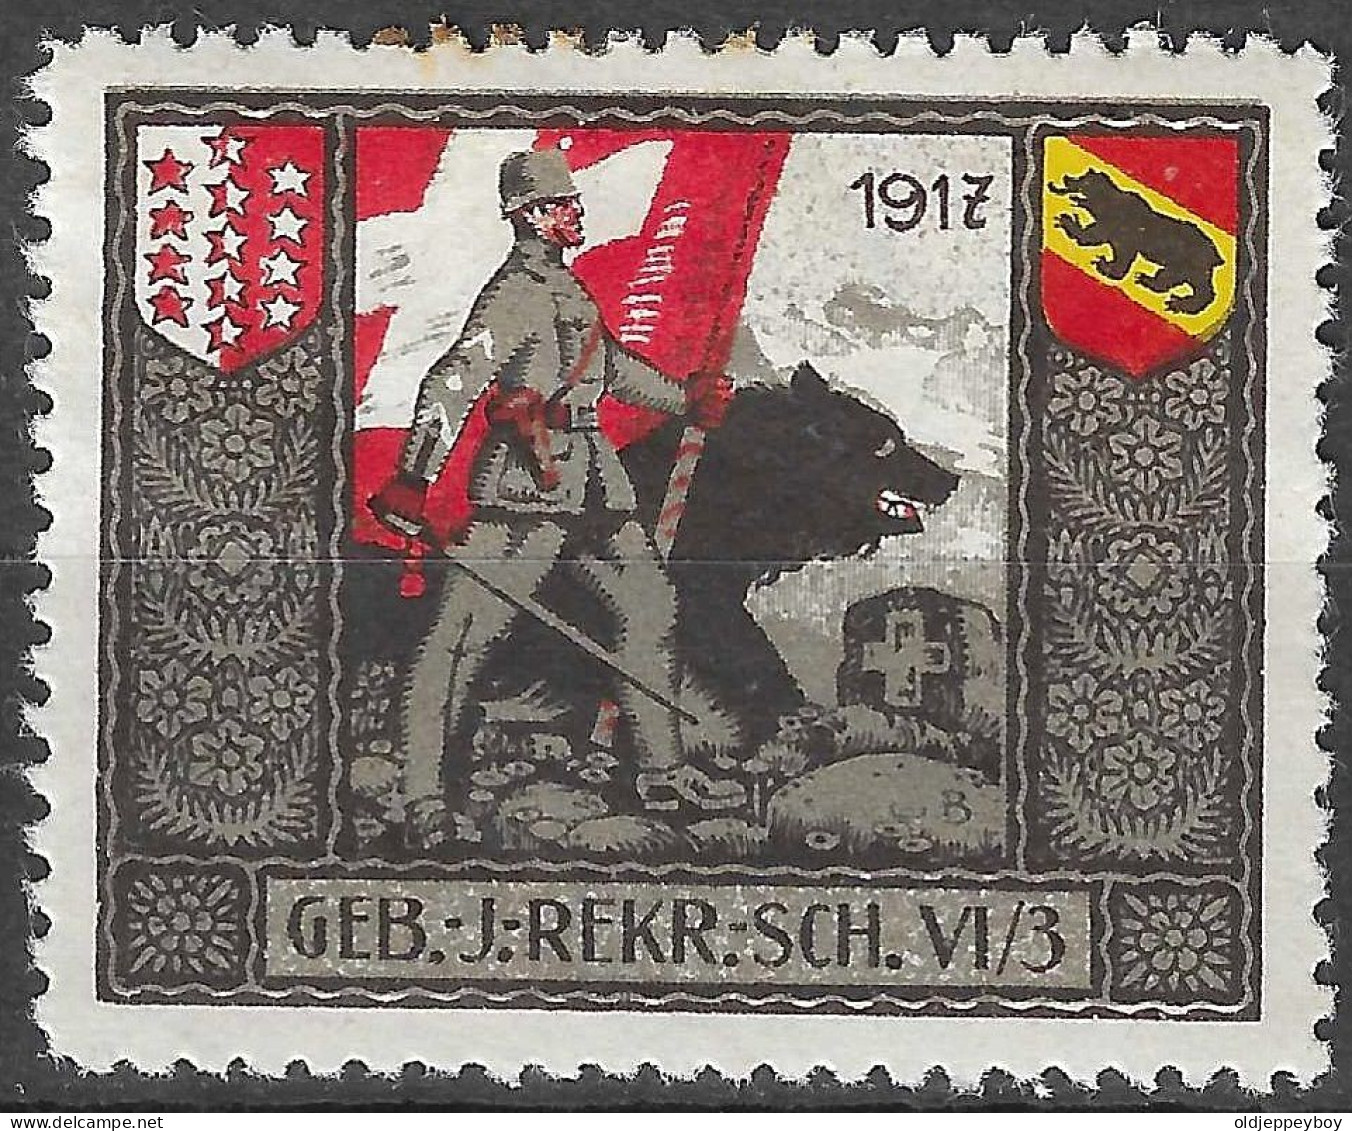 1914-1918 SWITZERLAND Soldatenmarken Suisse Militaire Vignette 1917 GEB.J.REKR.SCH.VI/3 MLH FULL GUM VF - Vignettes